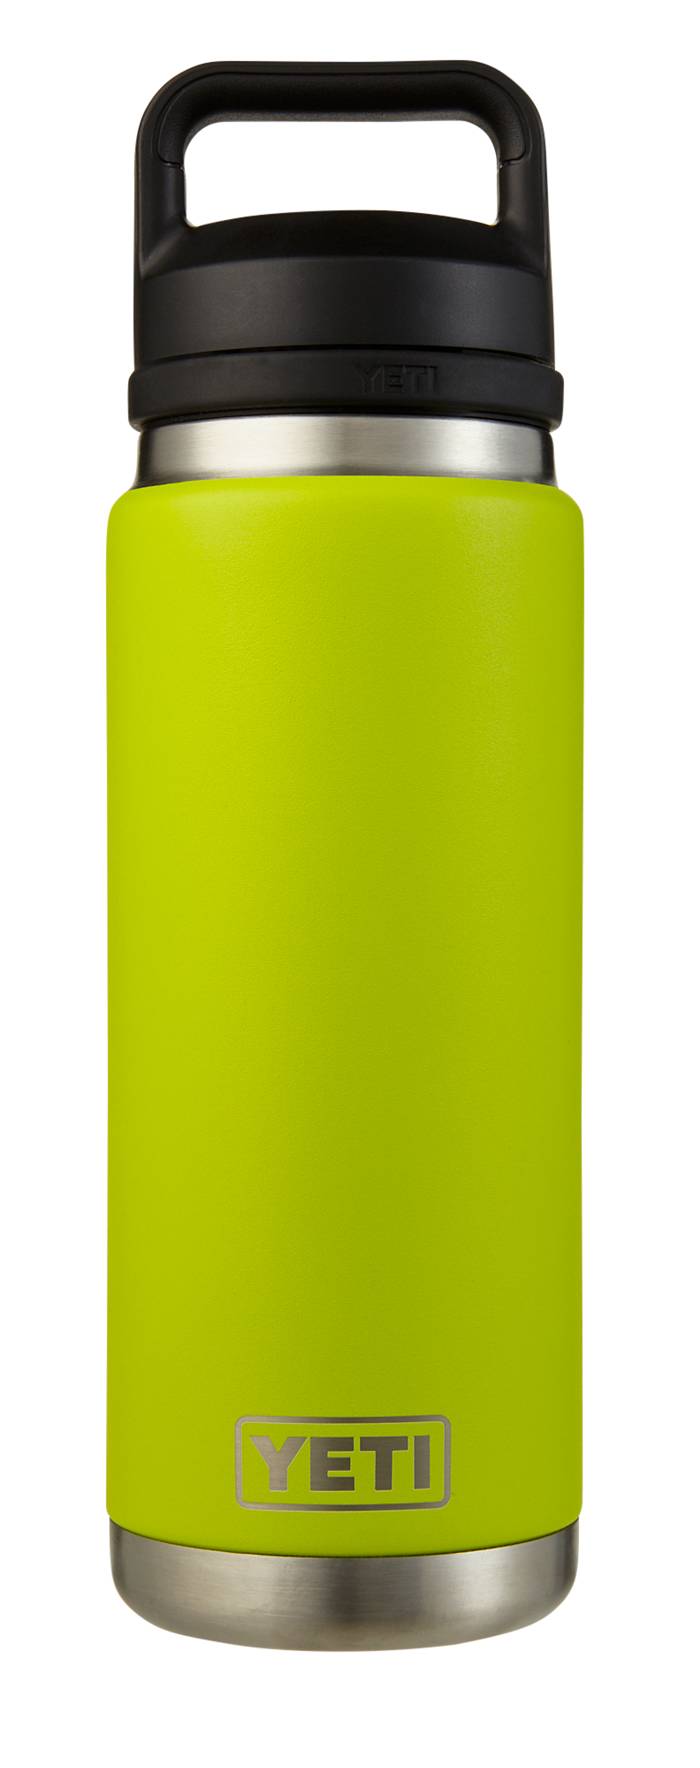 YETI Rambler 26 Oz. Bottle, New Colors!; Pick your favorite color!